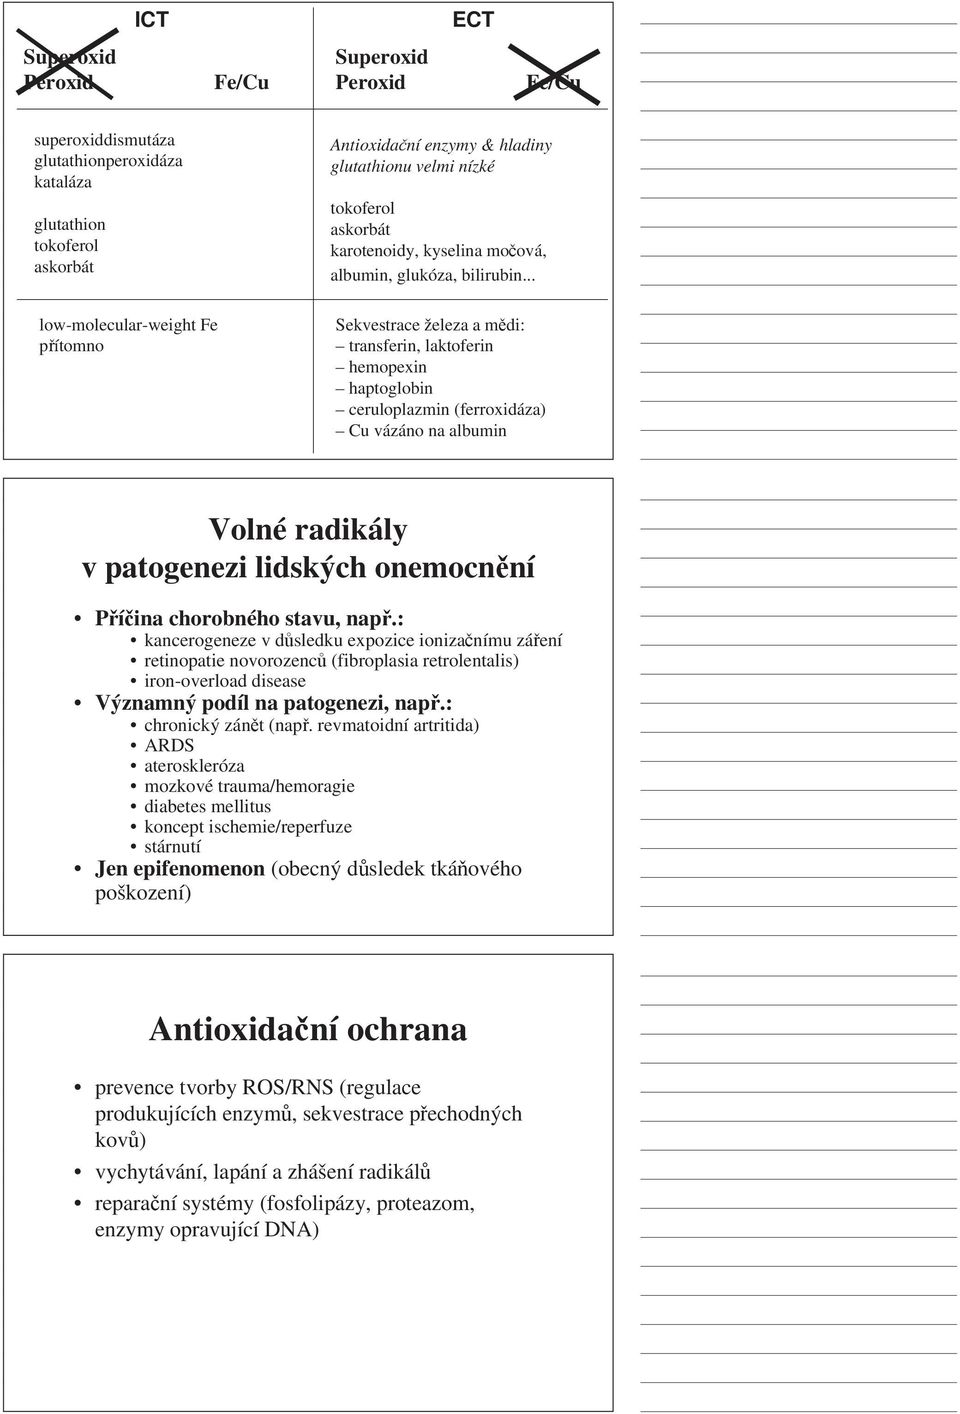 PATOBIOCHEMIE ve schématech - PDF Stažení zdarma